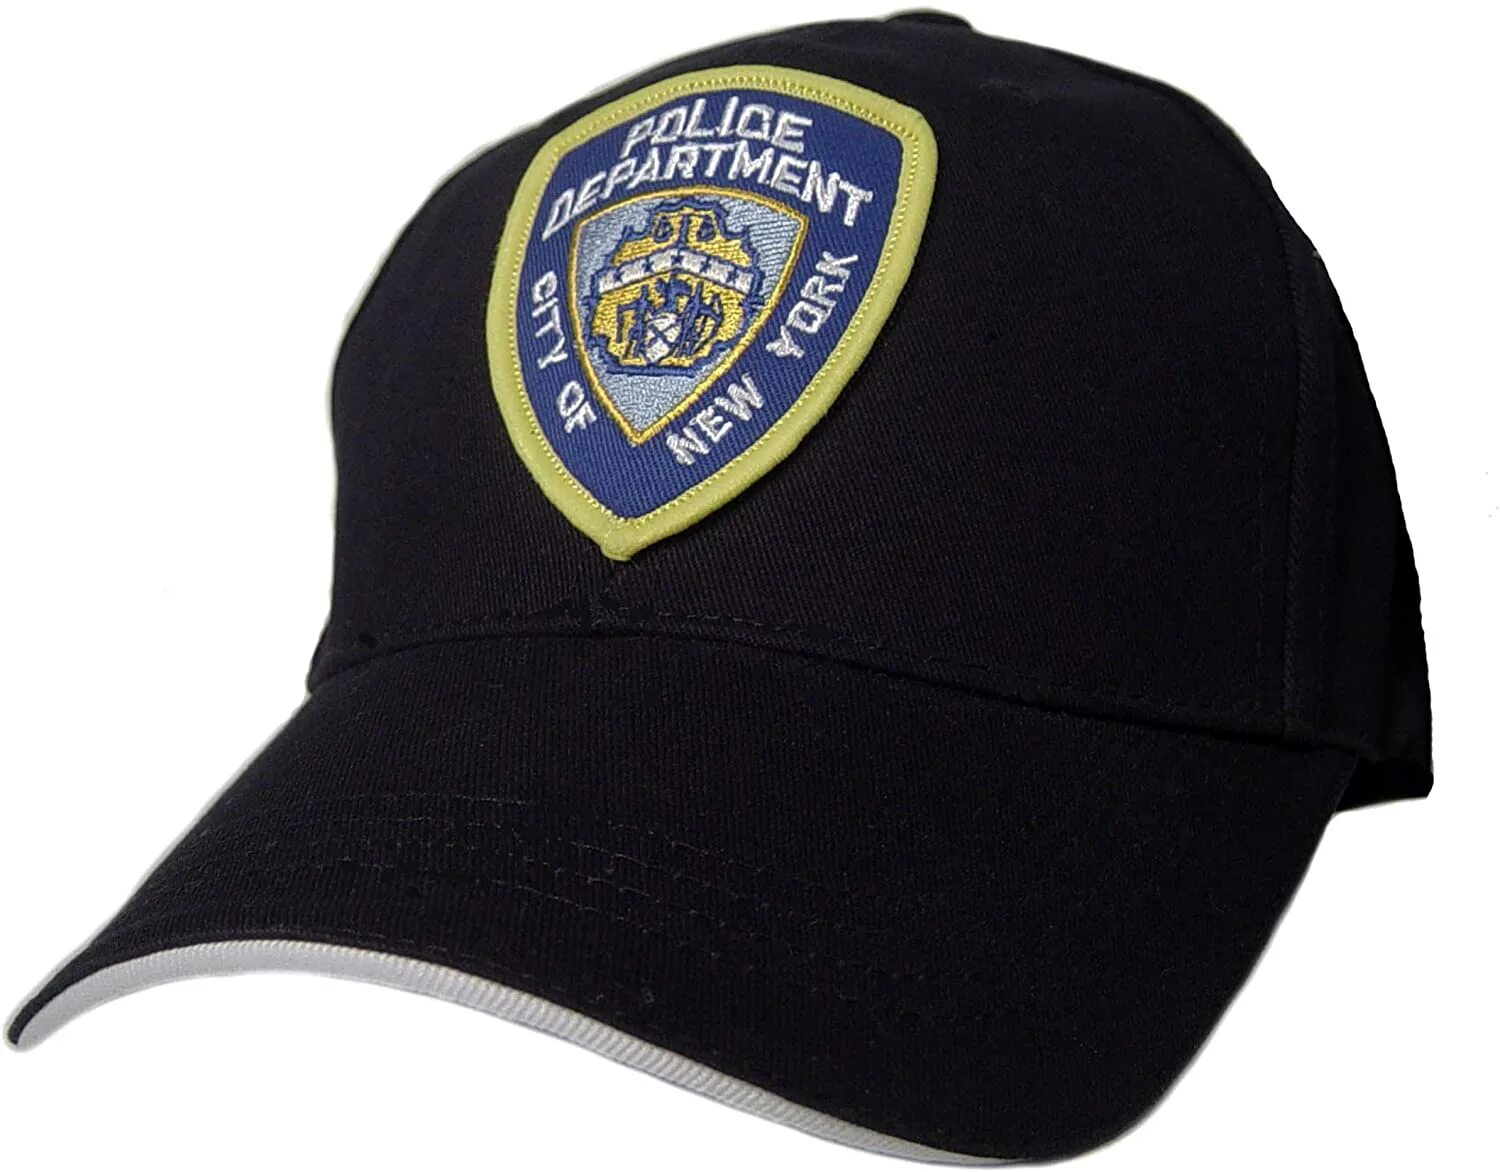 Кепка полиция нового образца. Бейсболка NYPD New York. NYPD New York Jeans кепка. Chicago Police Department бейсболка. NYPD 85 Jean New York Department кепка.